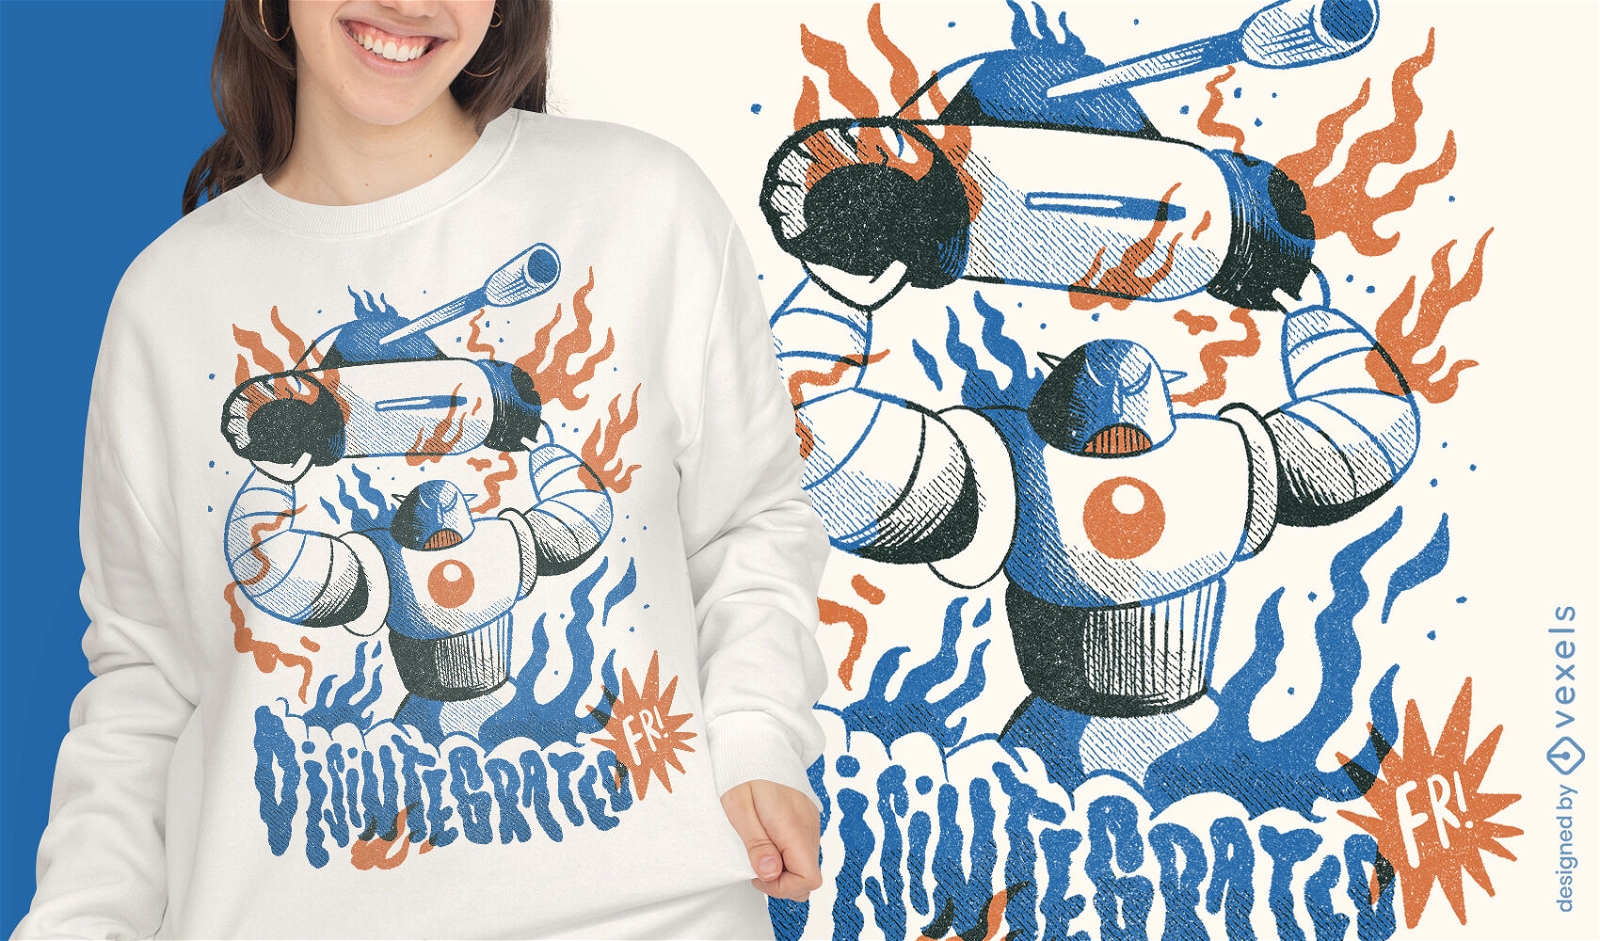 Diseño de camiseta de batalla de tanque de robot gigante